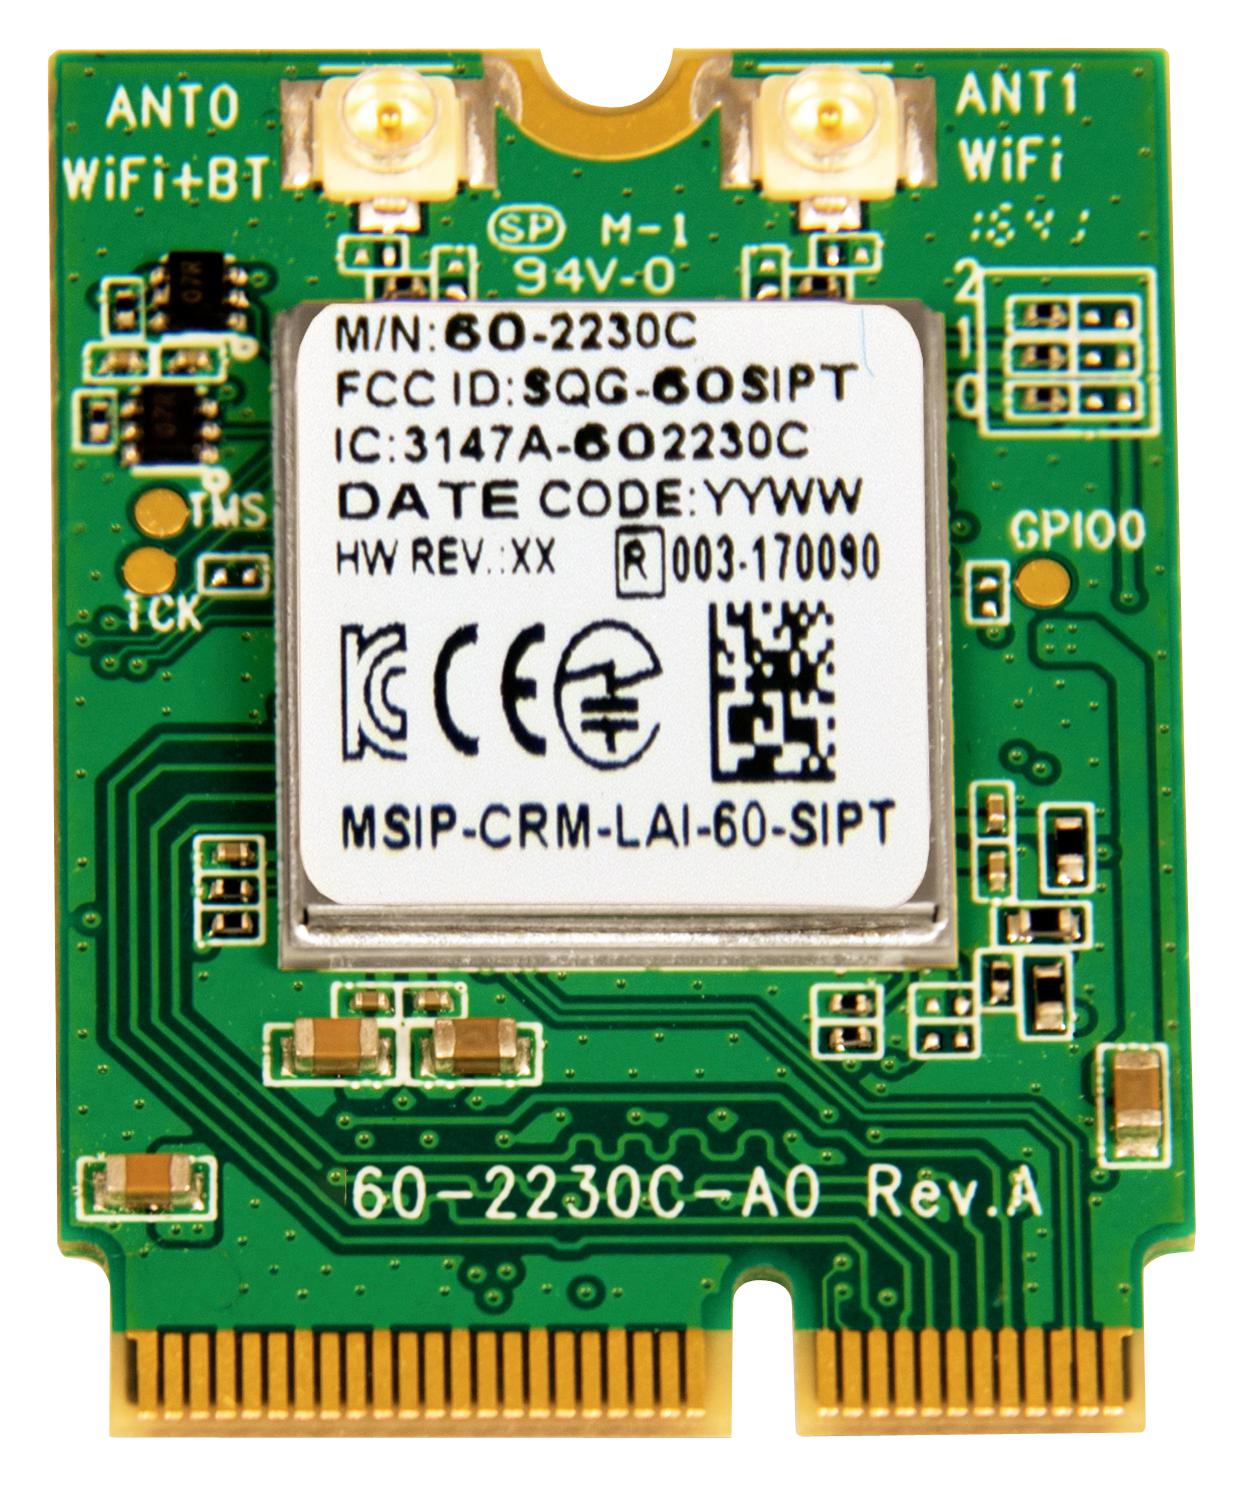 ST60-2230C-P BT/WIFI MODULE, 2.4-2.495/5.15-5.825GHZ LAIRD CONNECTIVITY